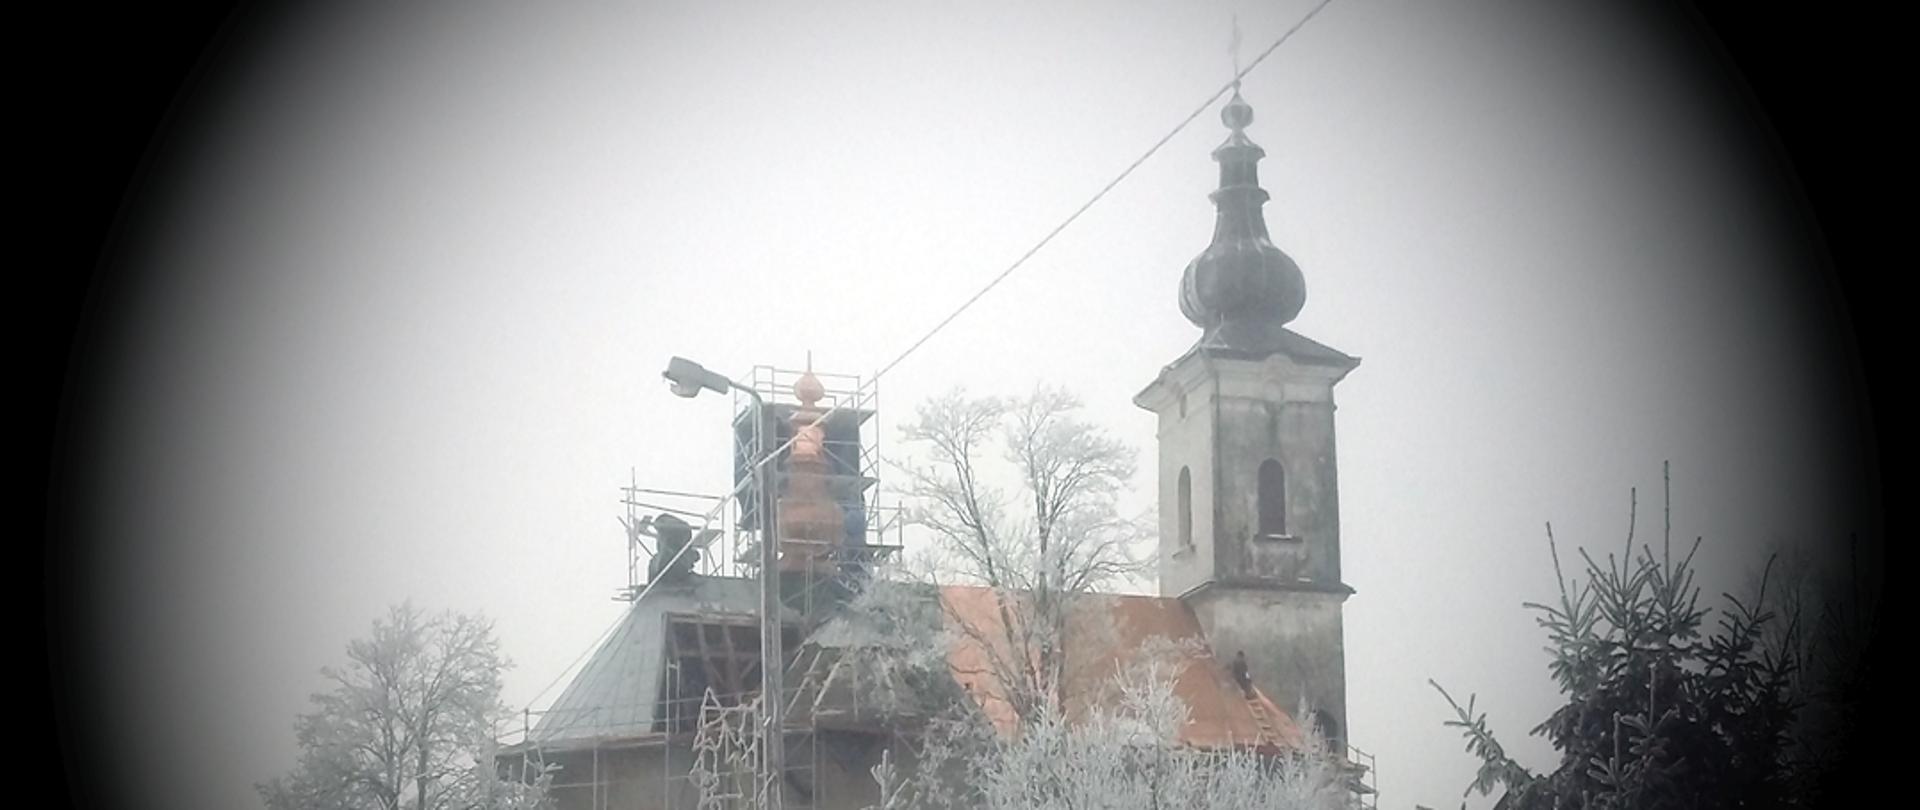 Widok na bok kościoła podczas remontu. Widoczne są rusztowania na wieżyczce dachowej części dachu. Rogi zdjęcia przyciemnione tworzą kolistą ramkę wokół budynku.